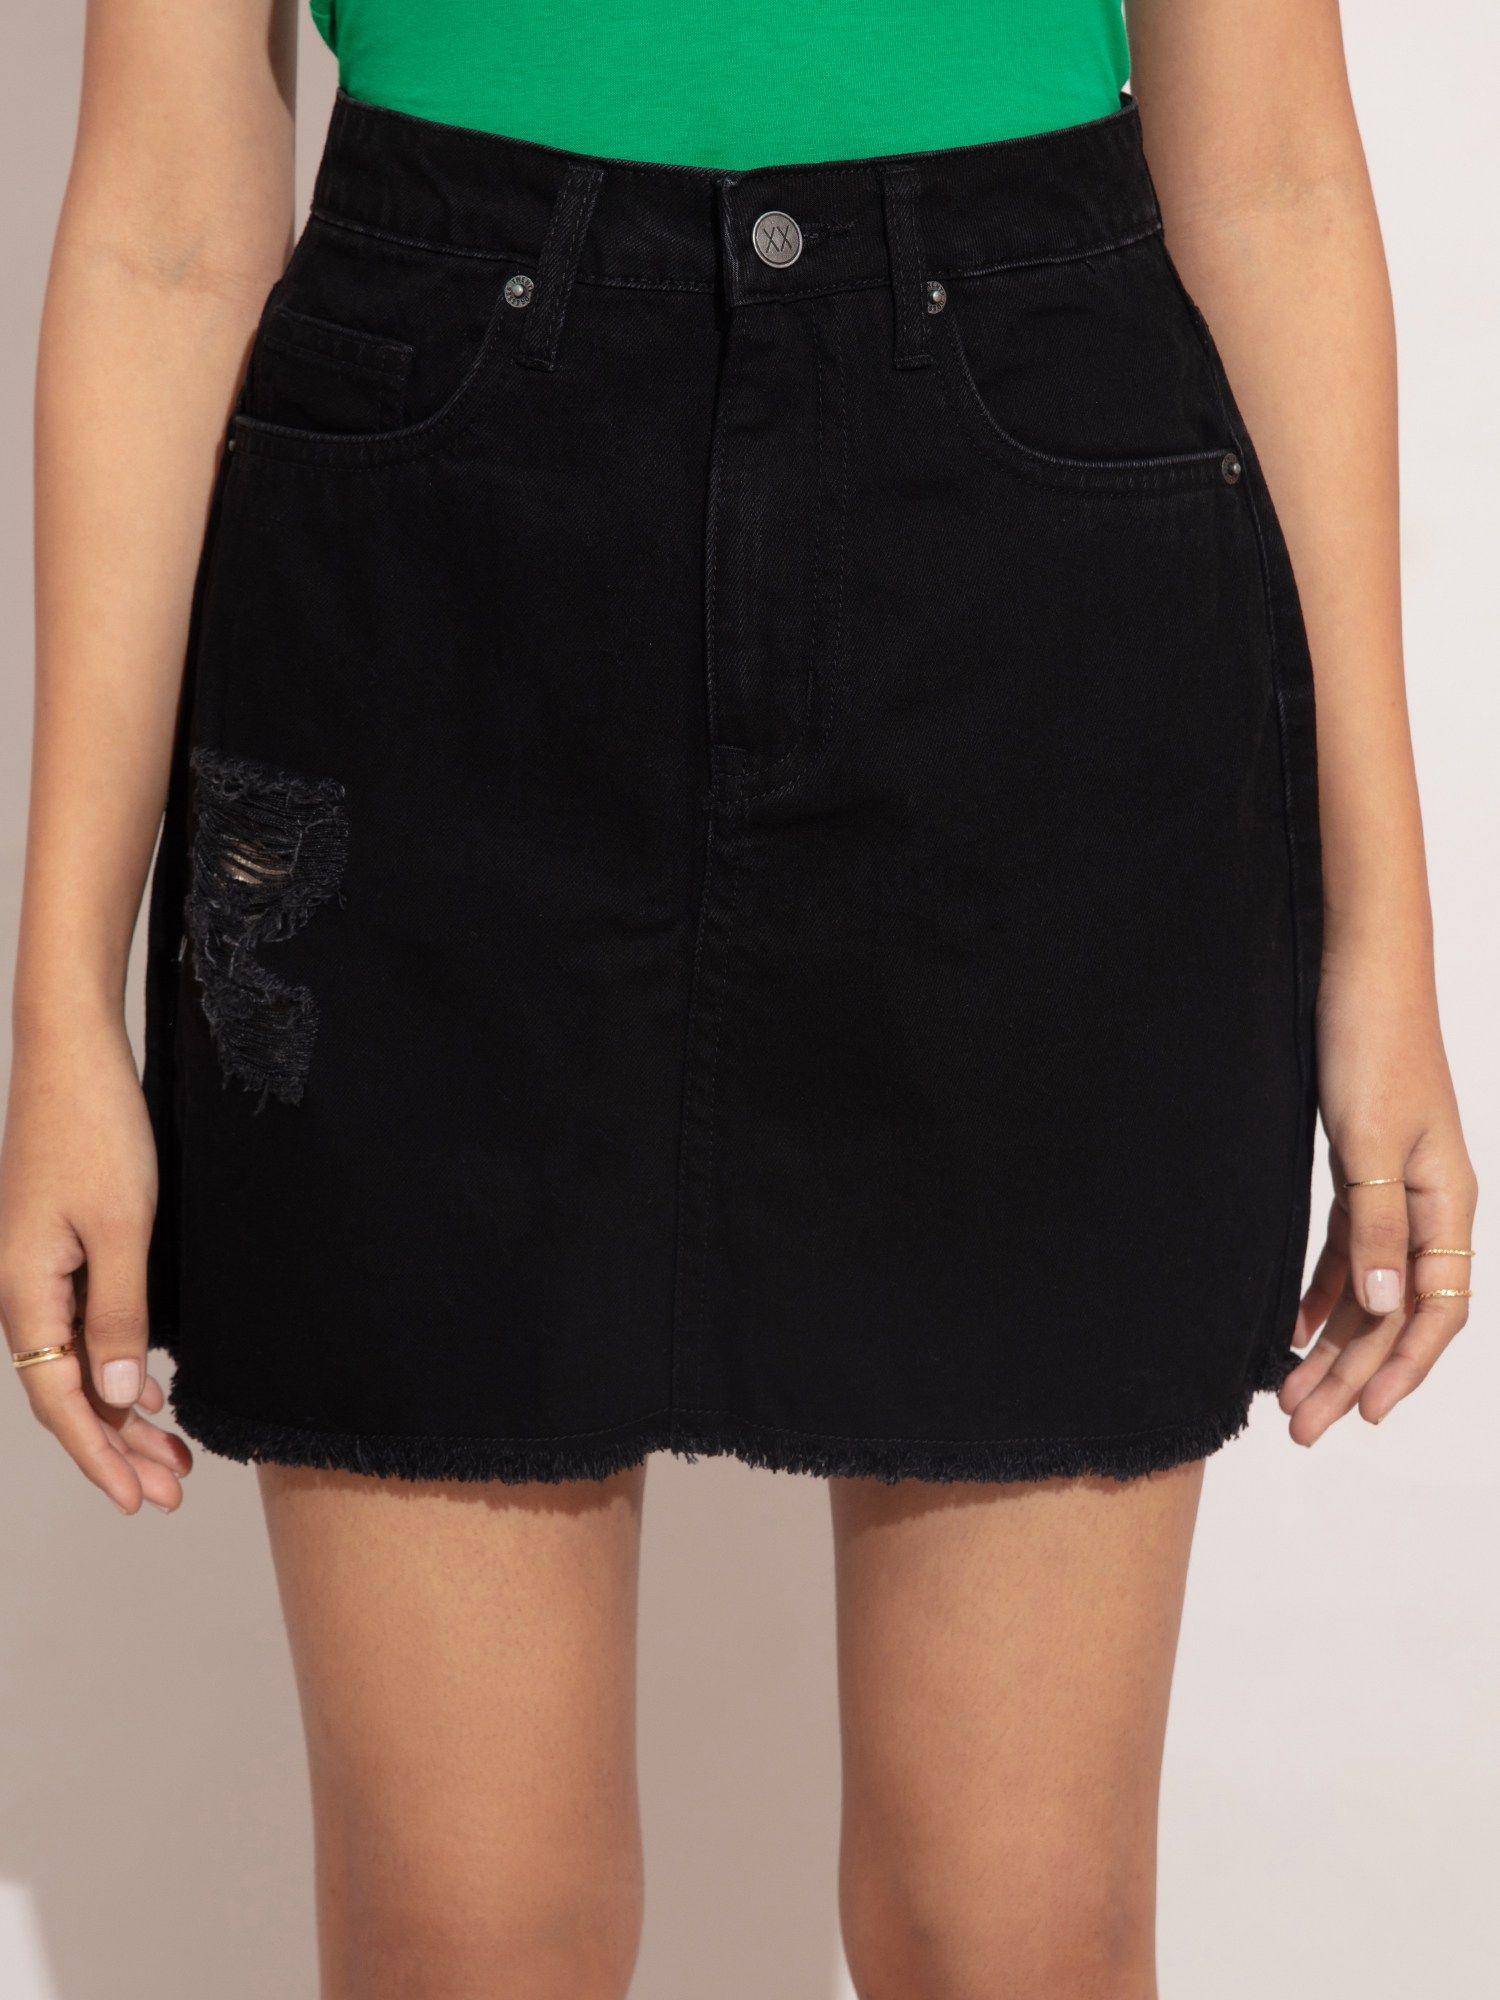 black ripped short denim skirt